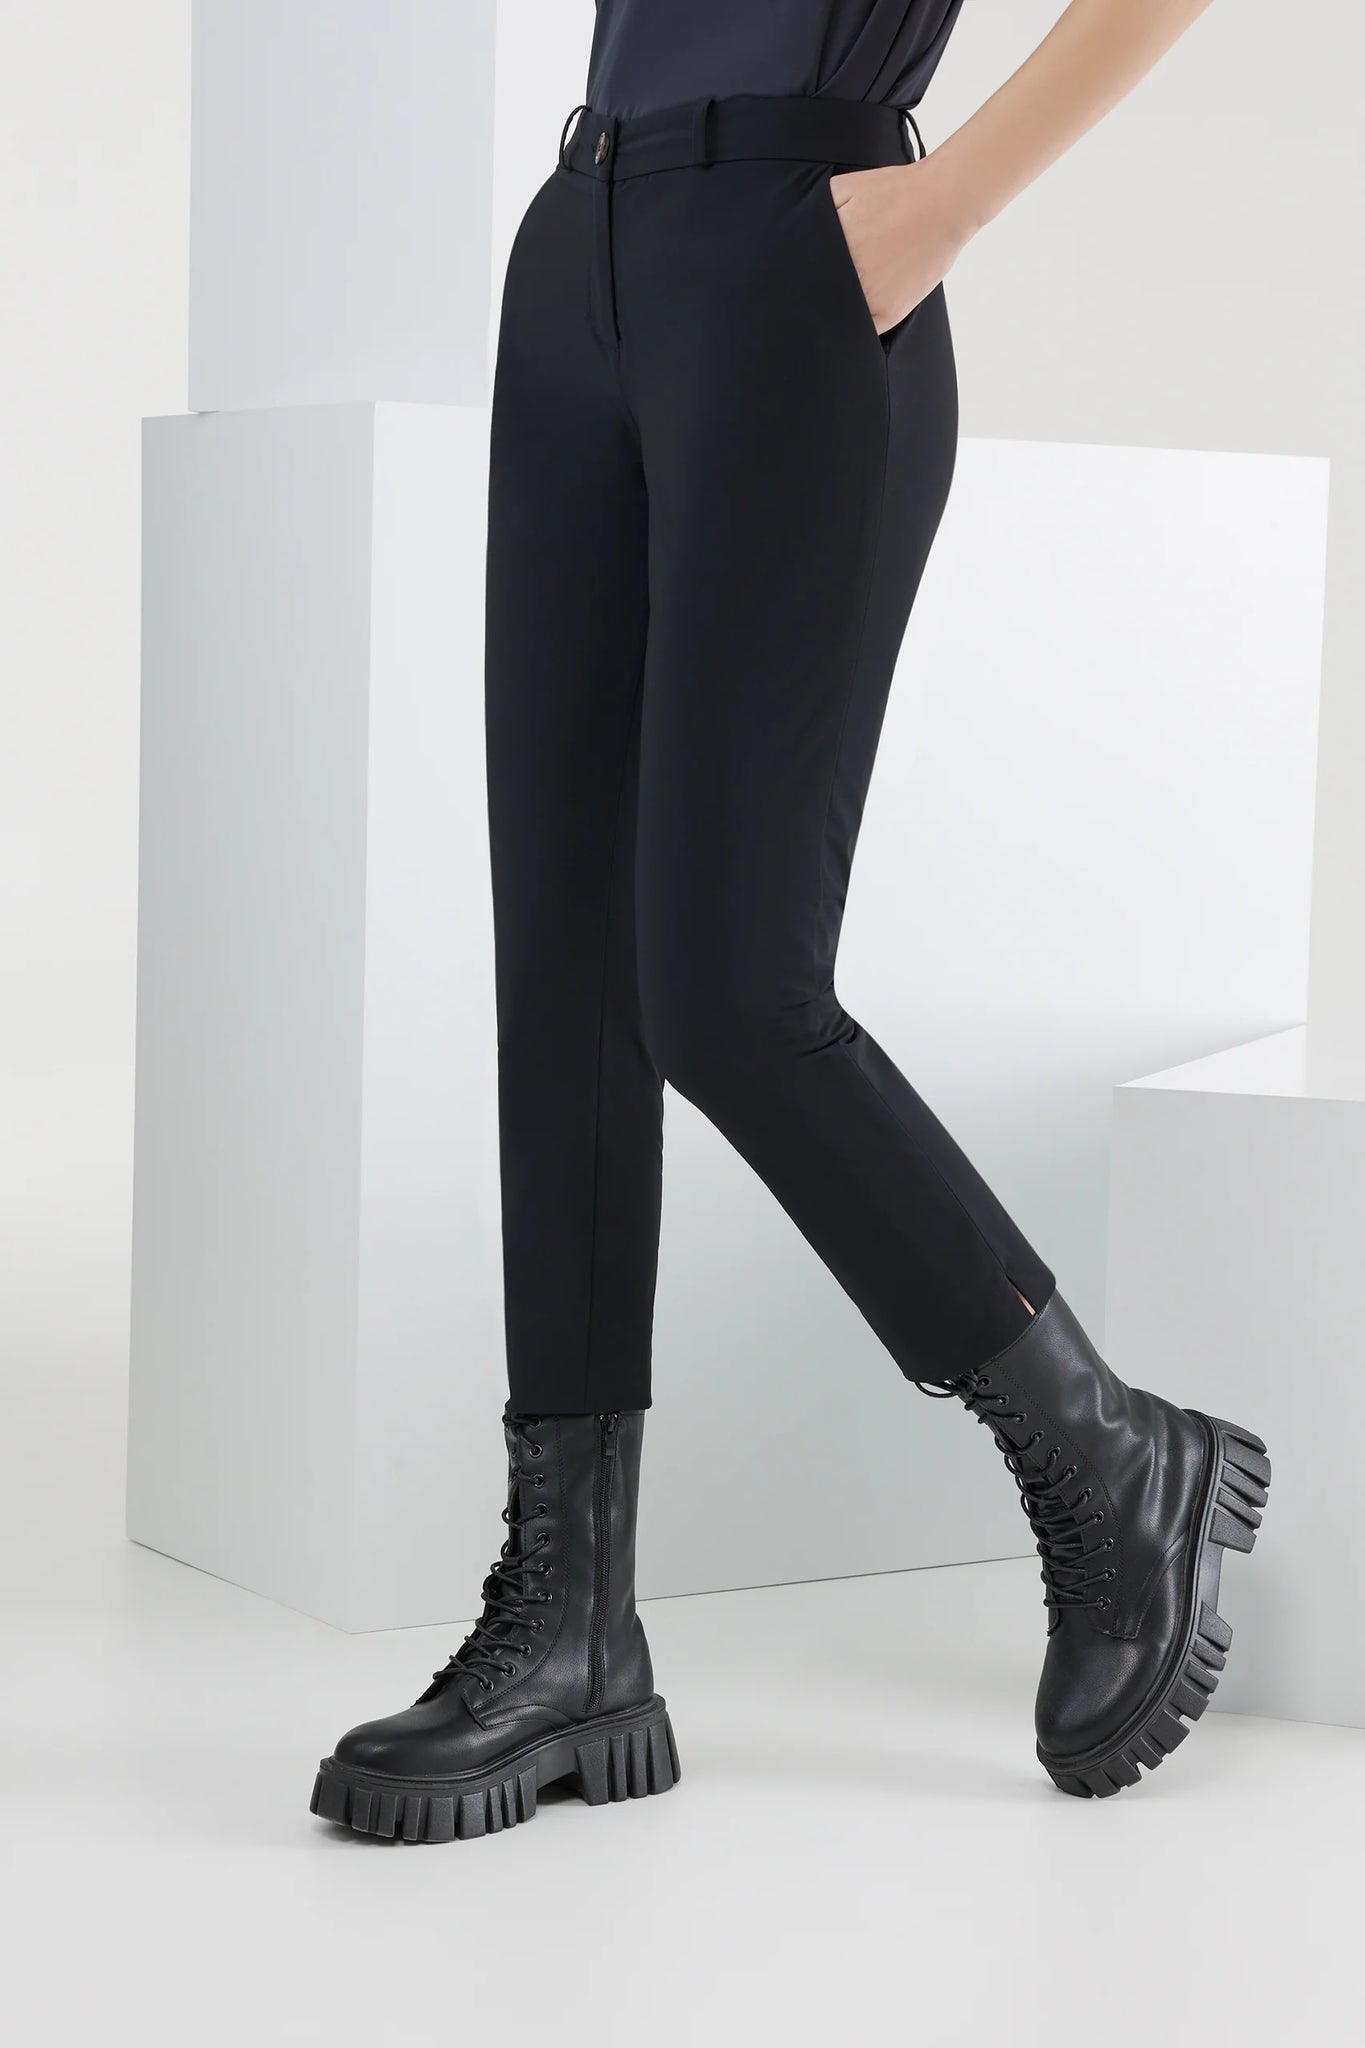 Pantalone da Donna Revo Chino RRD / Nero - Ideal Moda